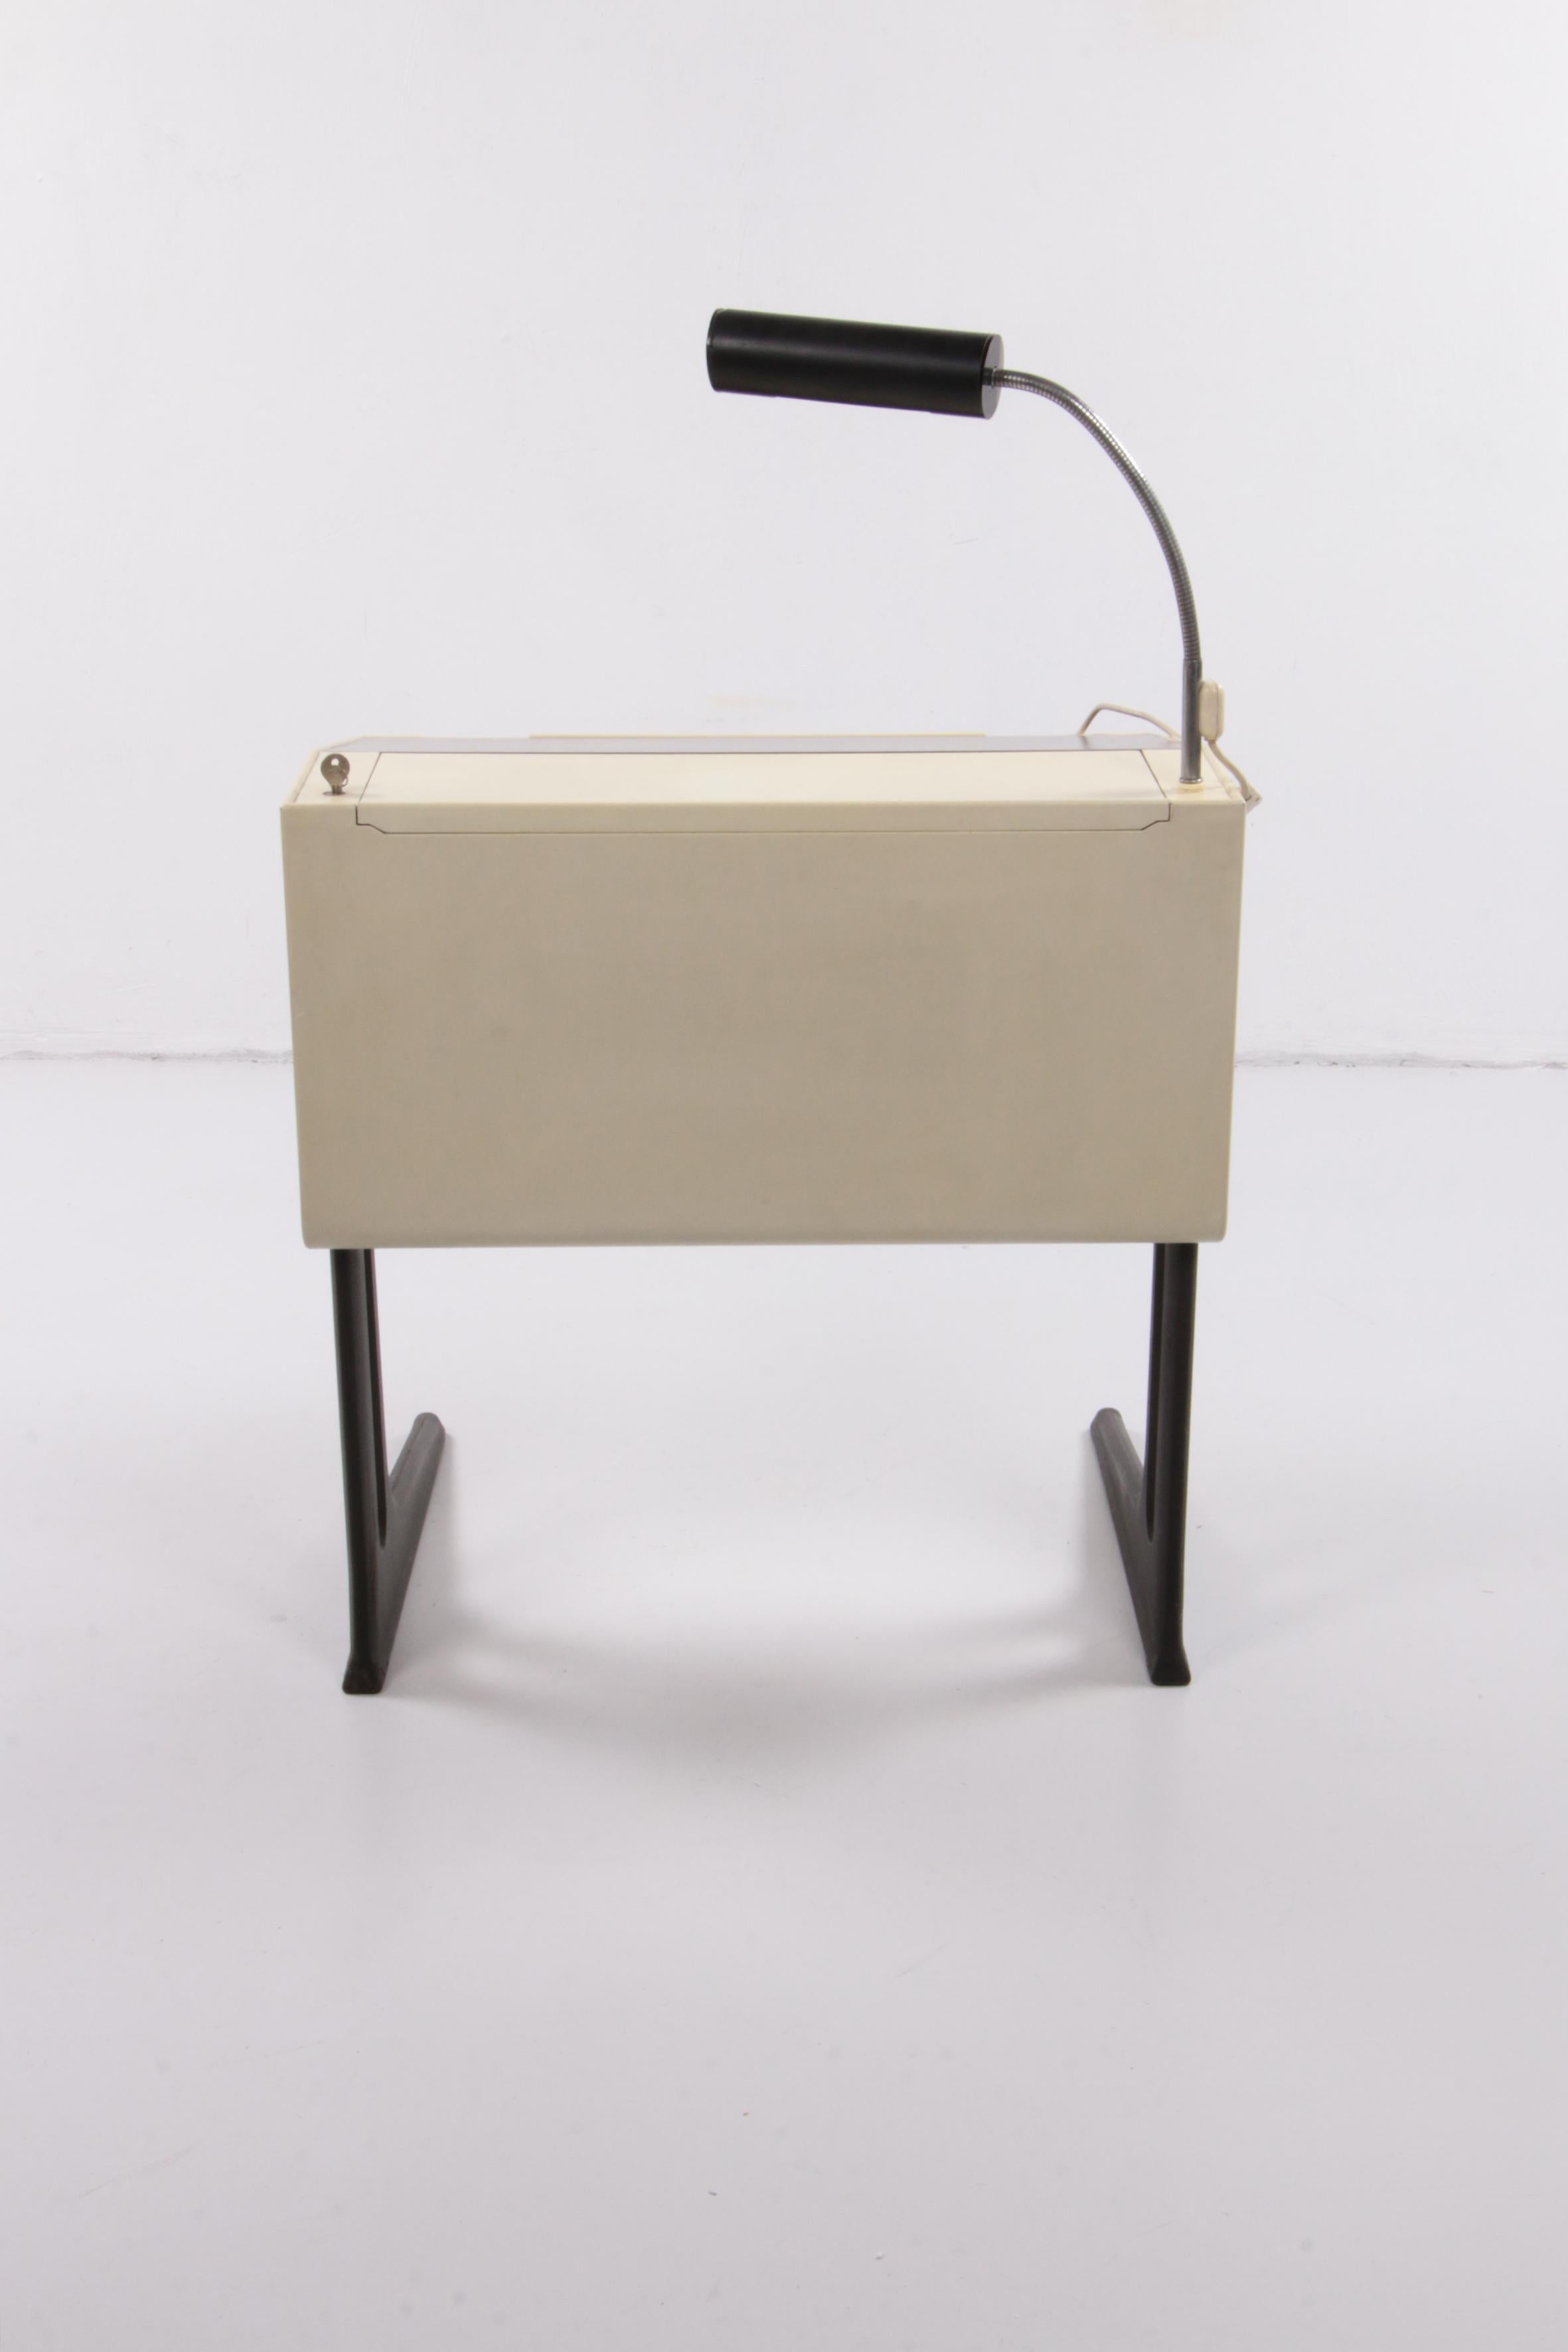 Flötotto Adjustable Desk Design by Luigi Colani, 1970, Germany 3